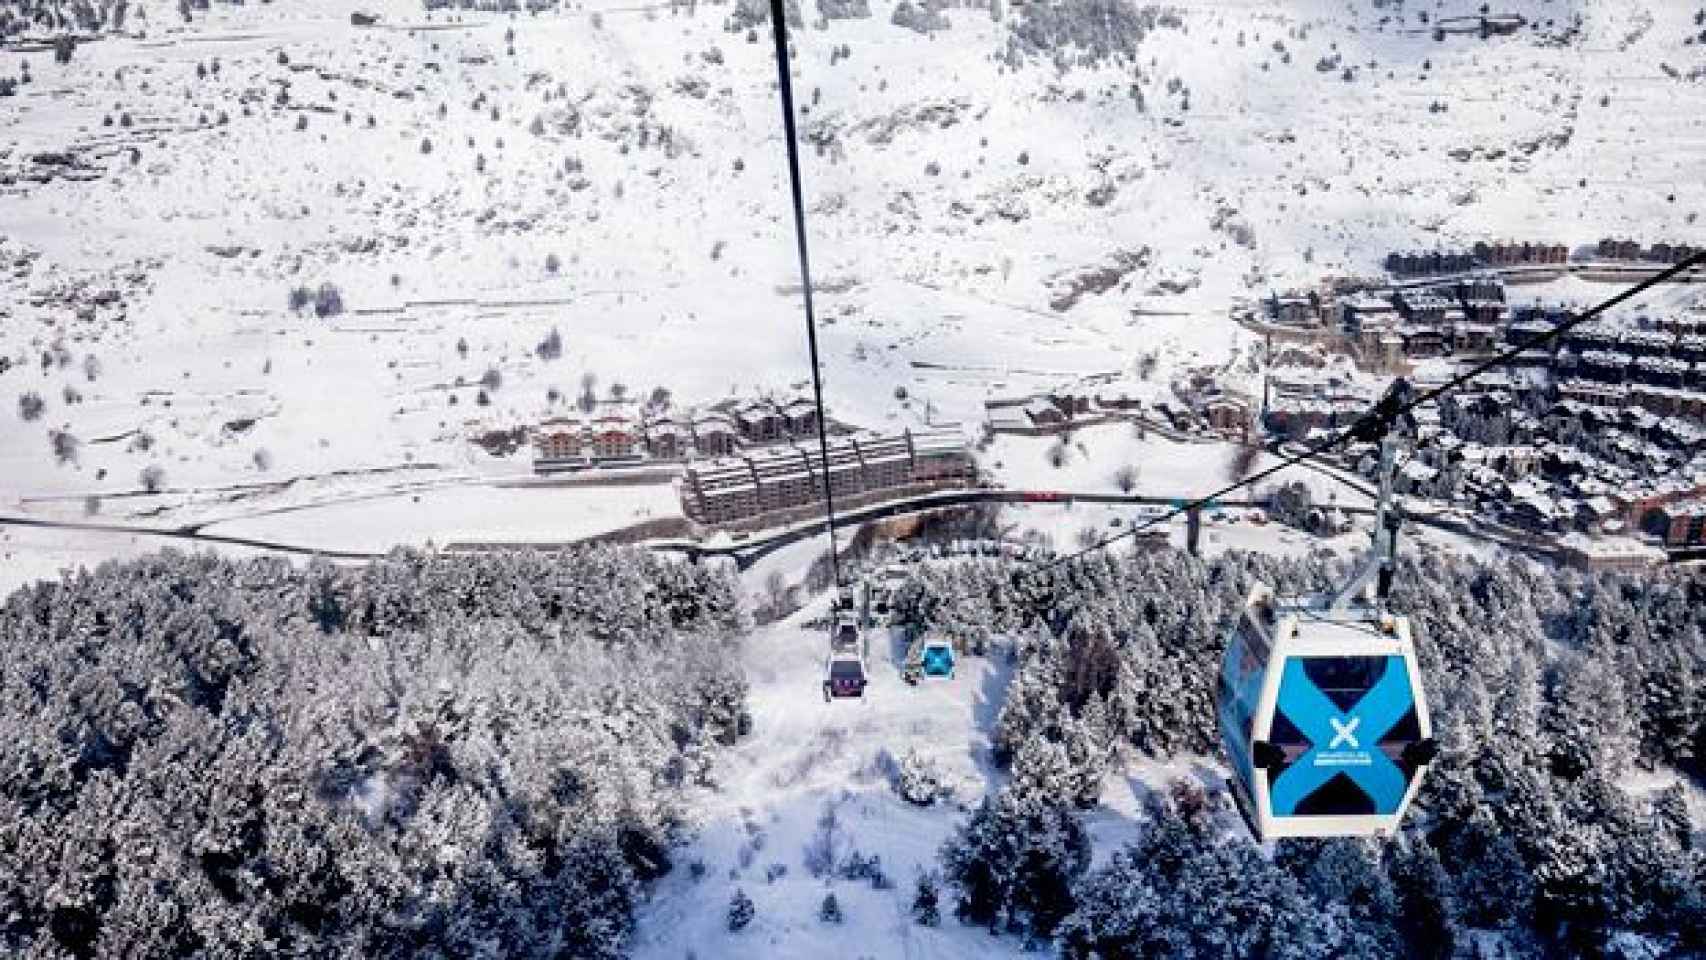 Imagen promocional de la última temporada de esquí en la estación de Grandvalira / CG